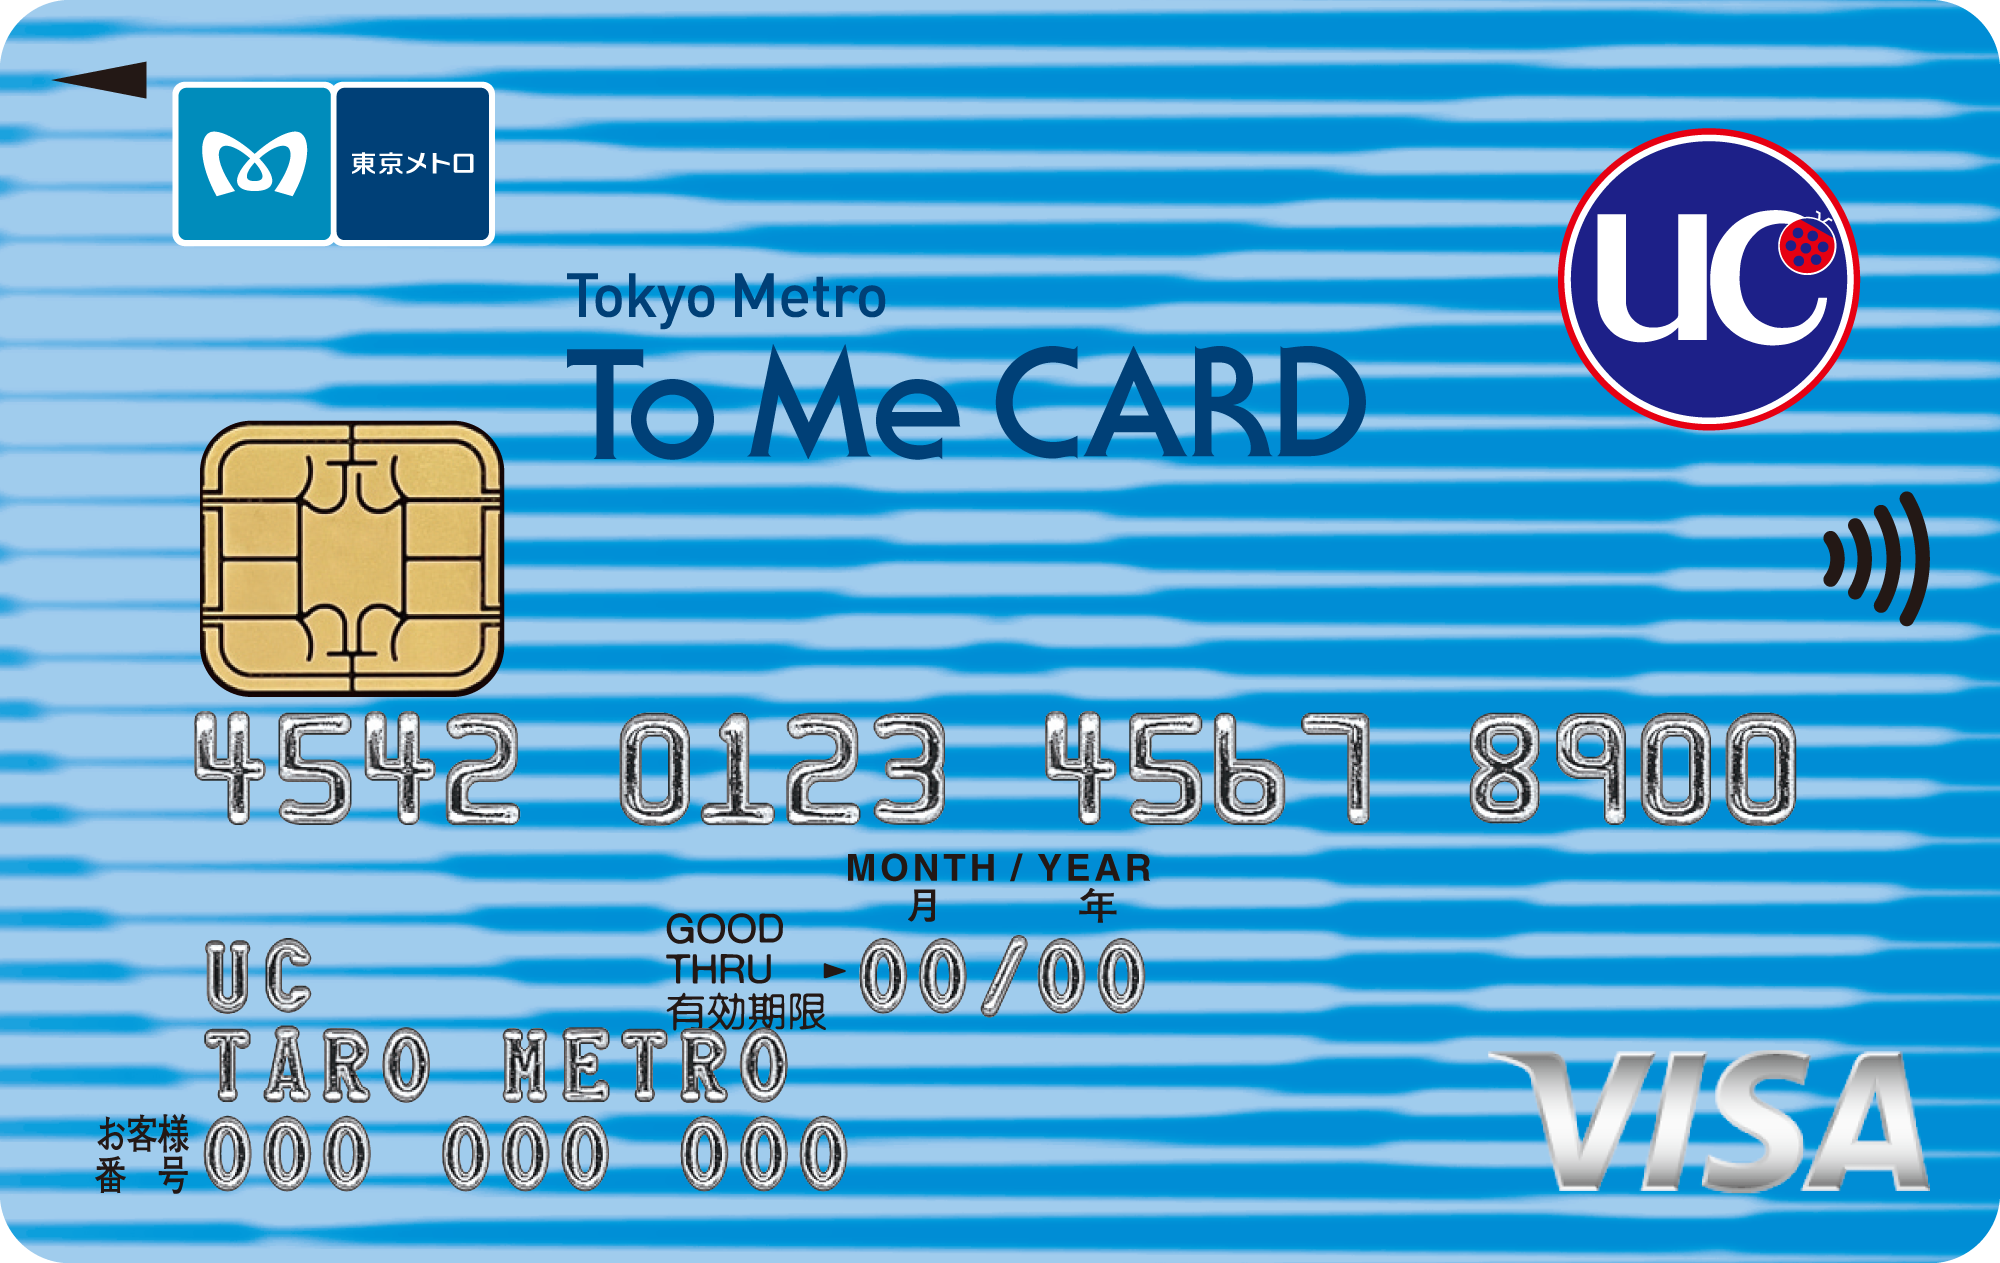 Tokyo Metro To Me CARD